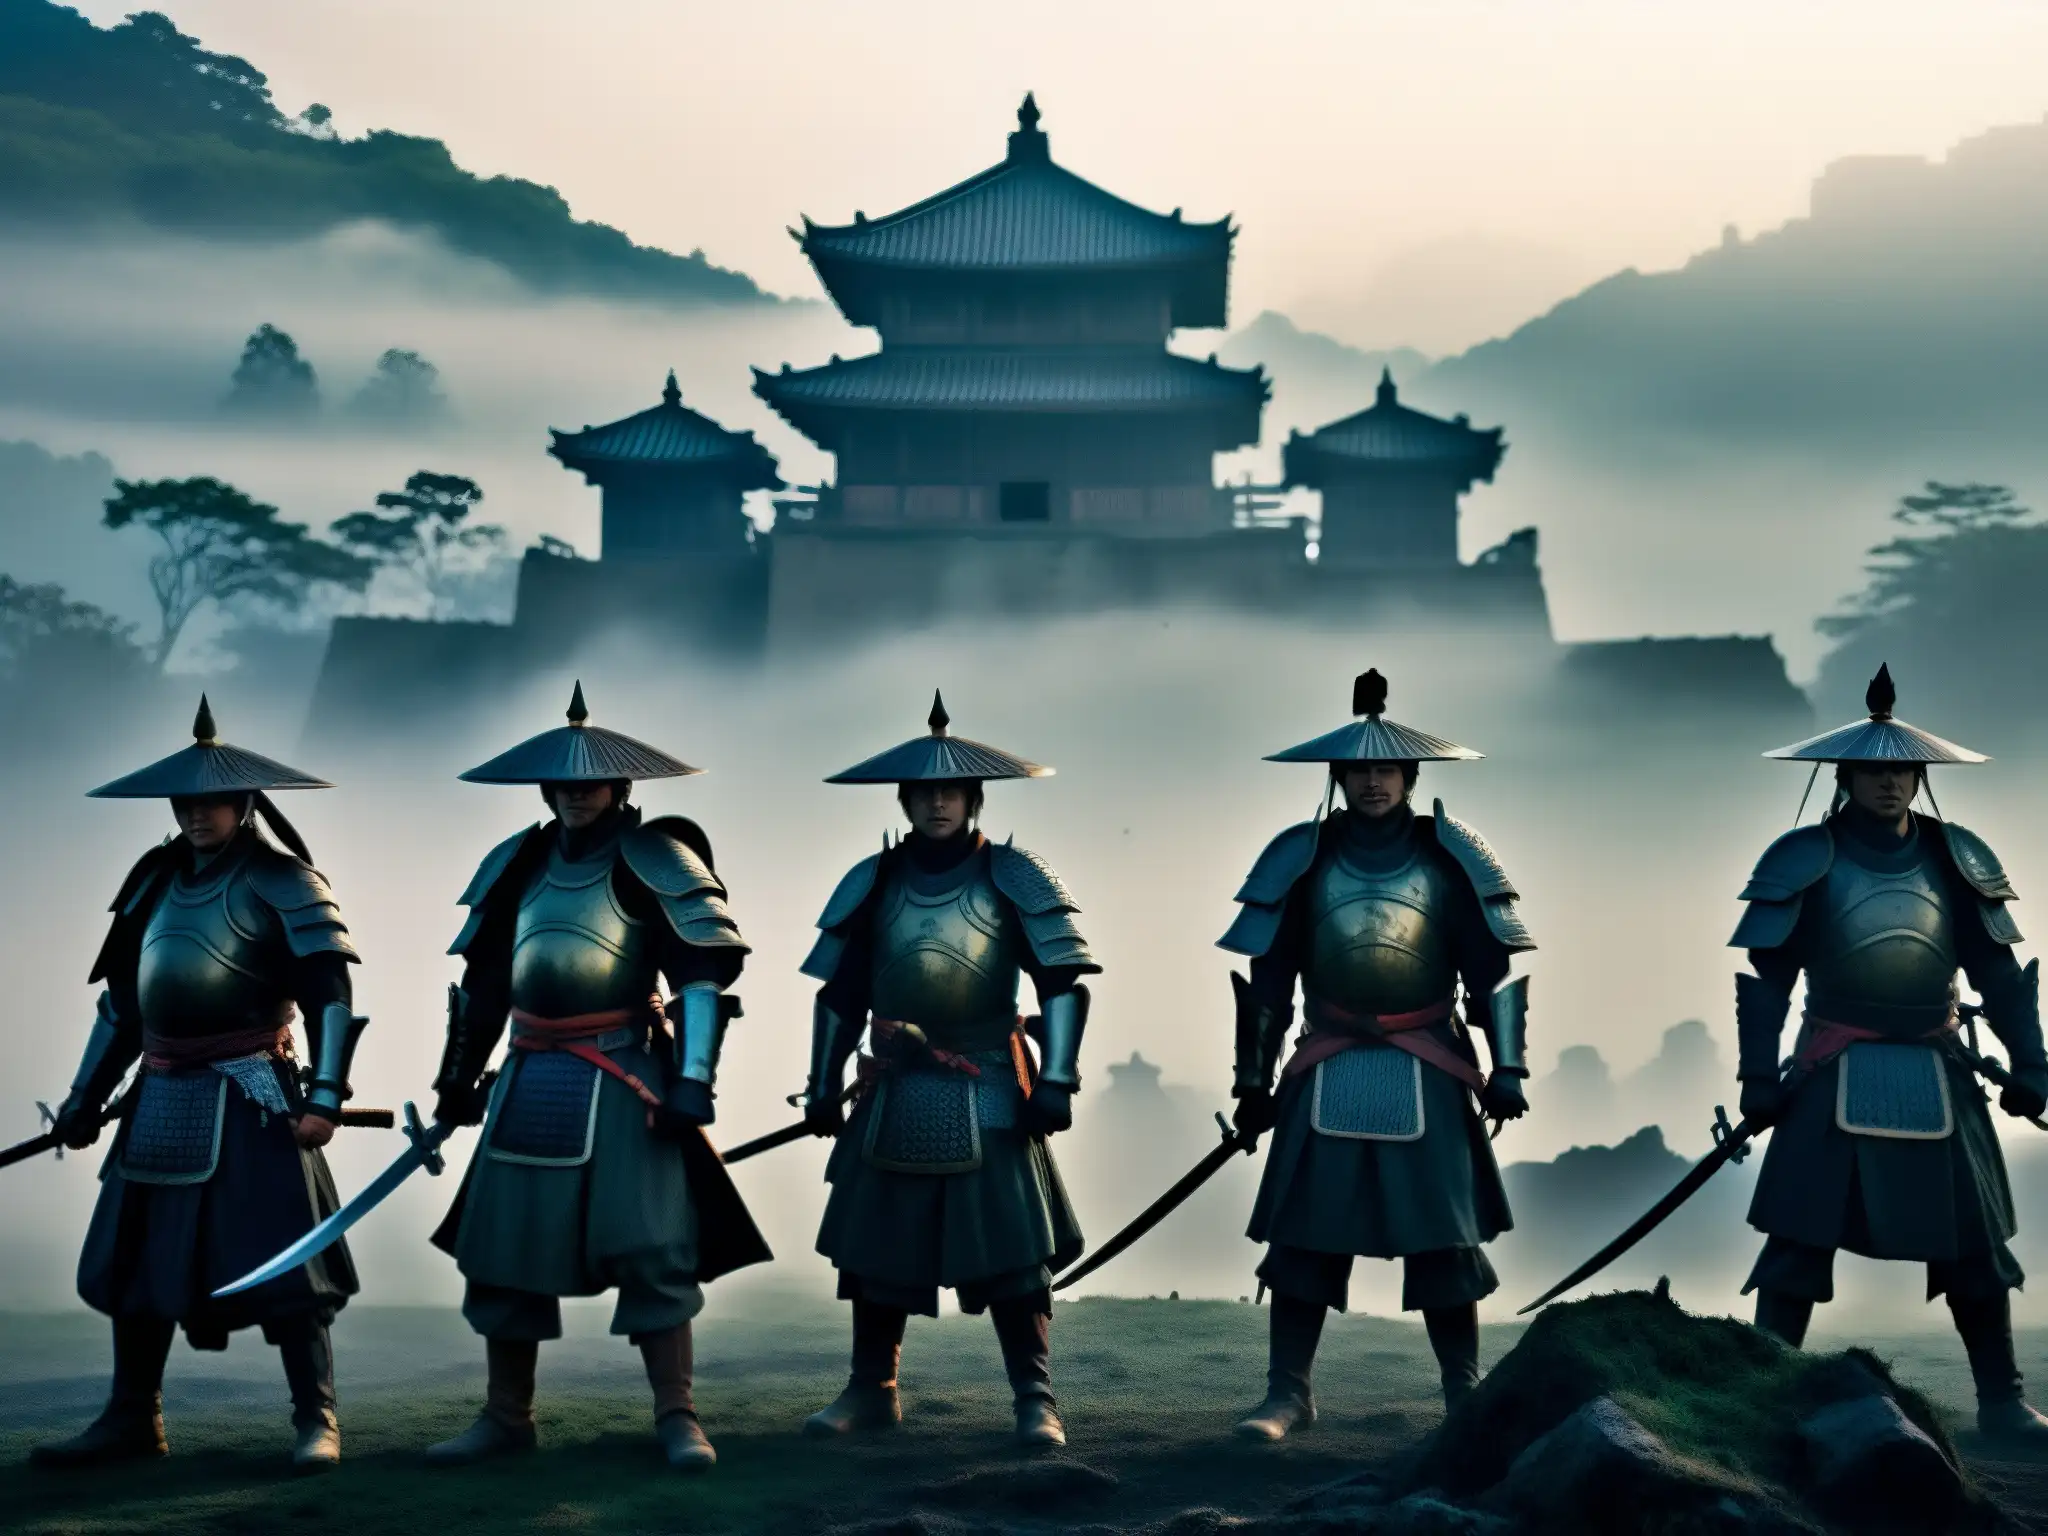 Apariciones de samuráis fantasmas en antigua batalla, rodeadas de misterio y desolación